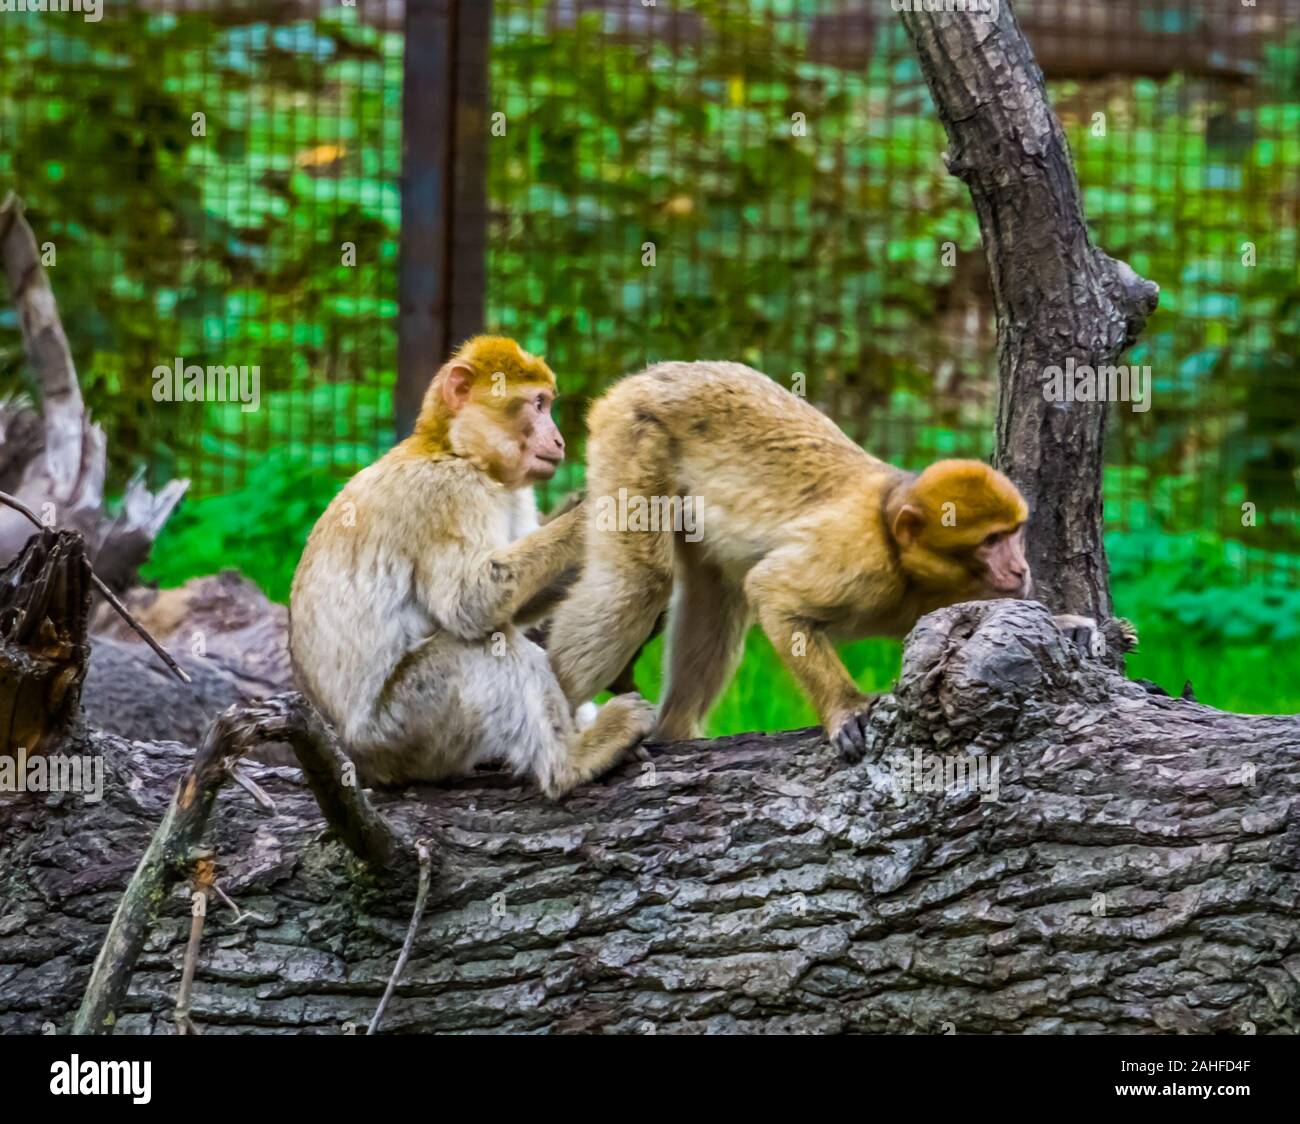 Funny barbary macaque giovane, scimmia in piedi in posizione strana che mostra il suo dietro, in via di estinzione specie animale dall'Africa Foto Stock